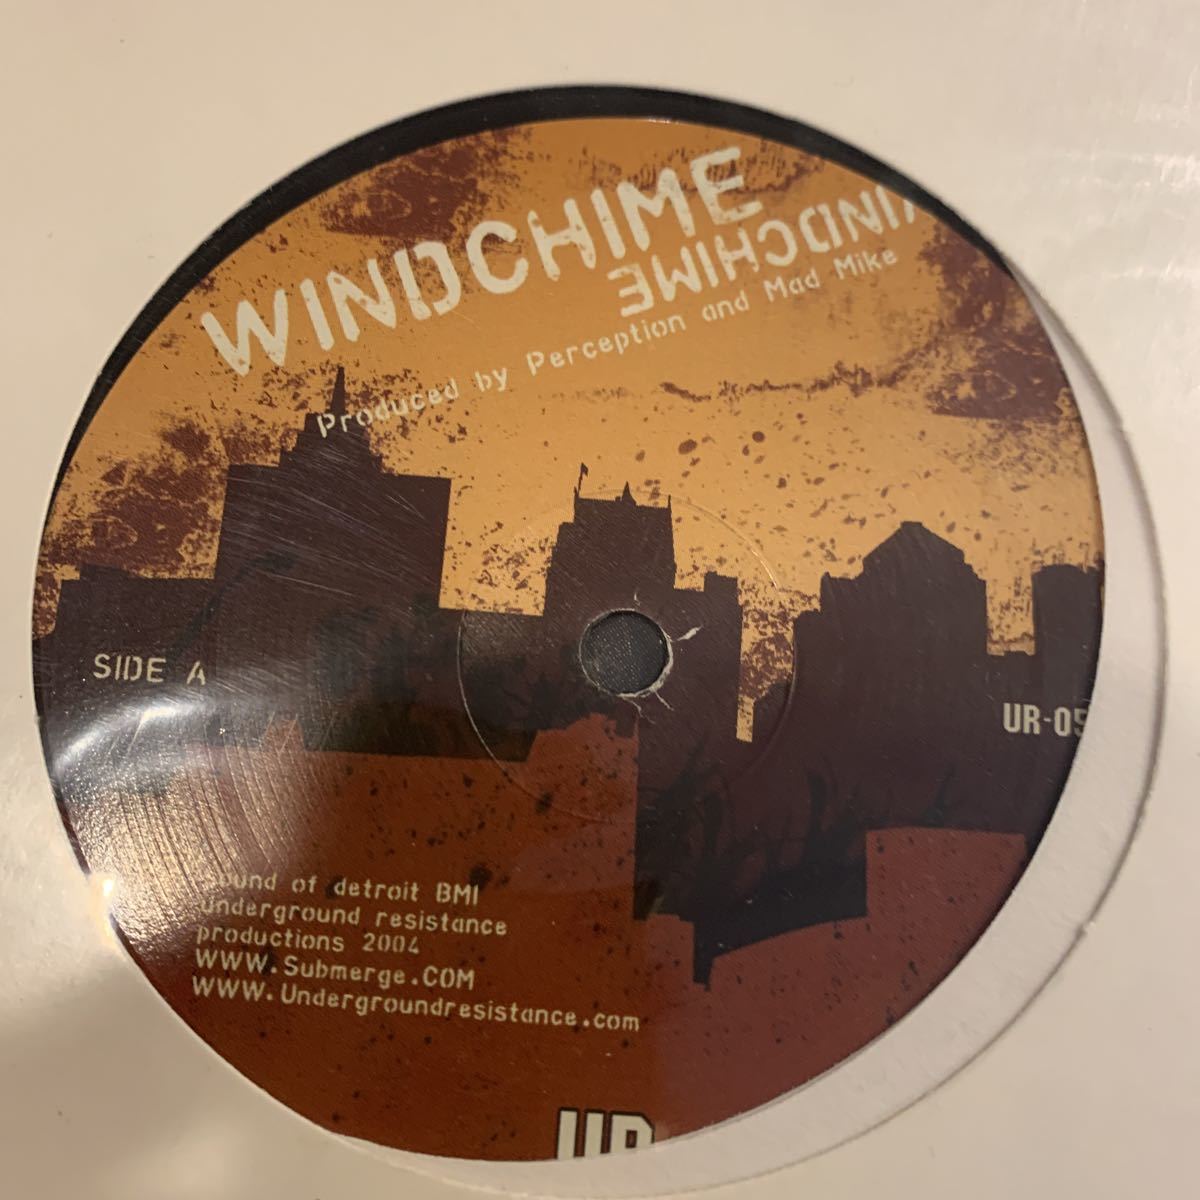 PERCEPTION & MAD MIKE / Windchime 中古レコード_画像1